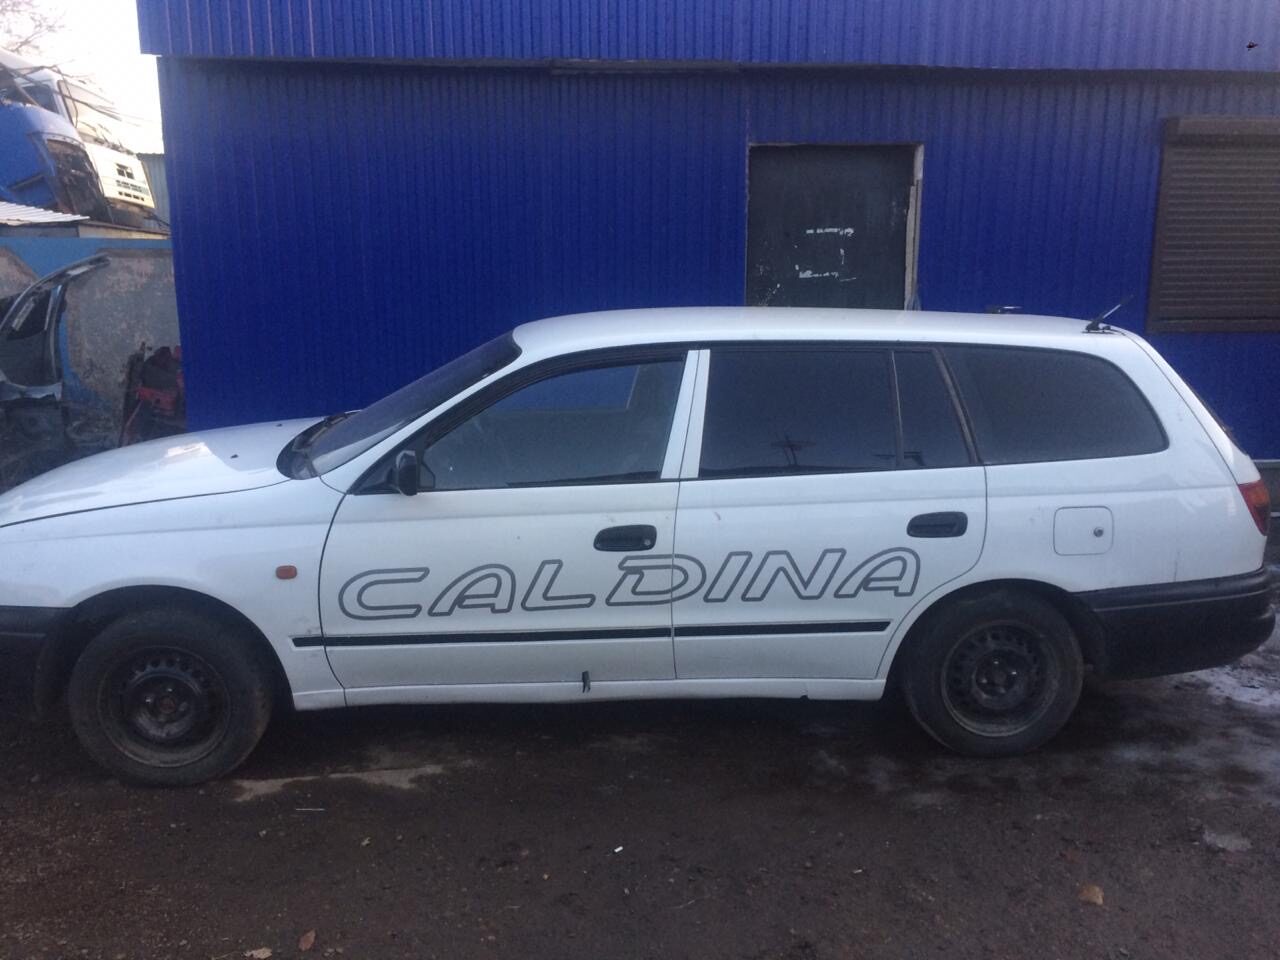 Toyota Caldina (Тойота Калдина) 1996 г/в. Кузов СT-196. 